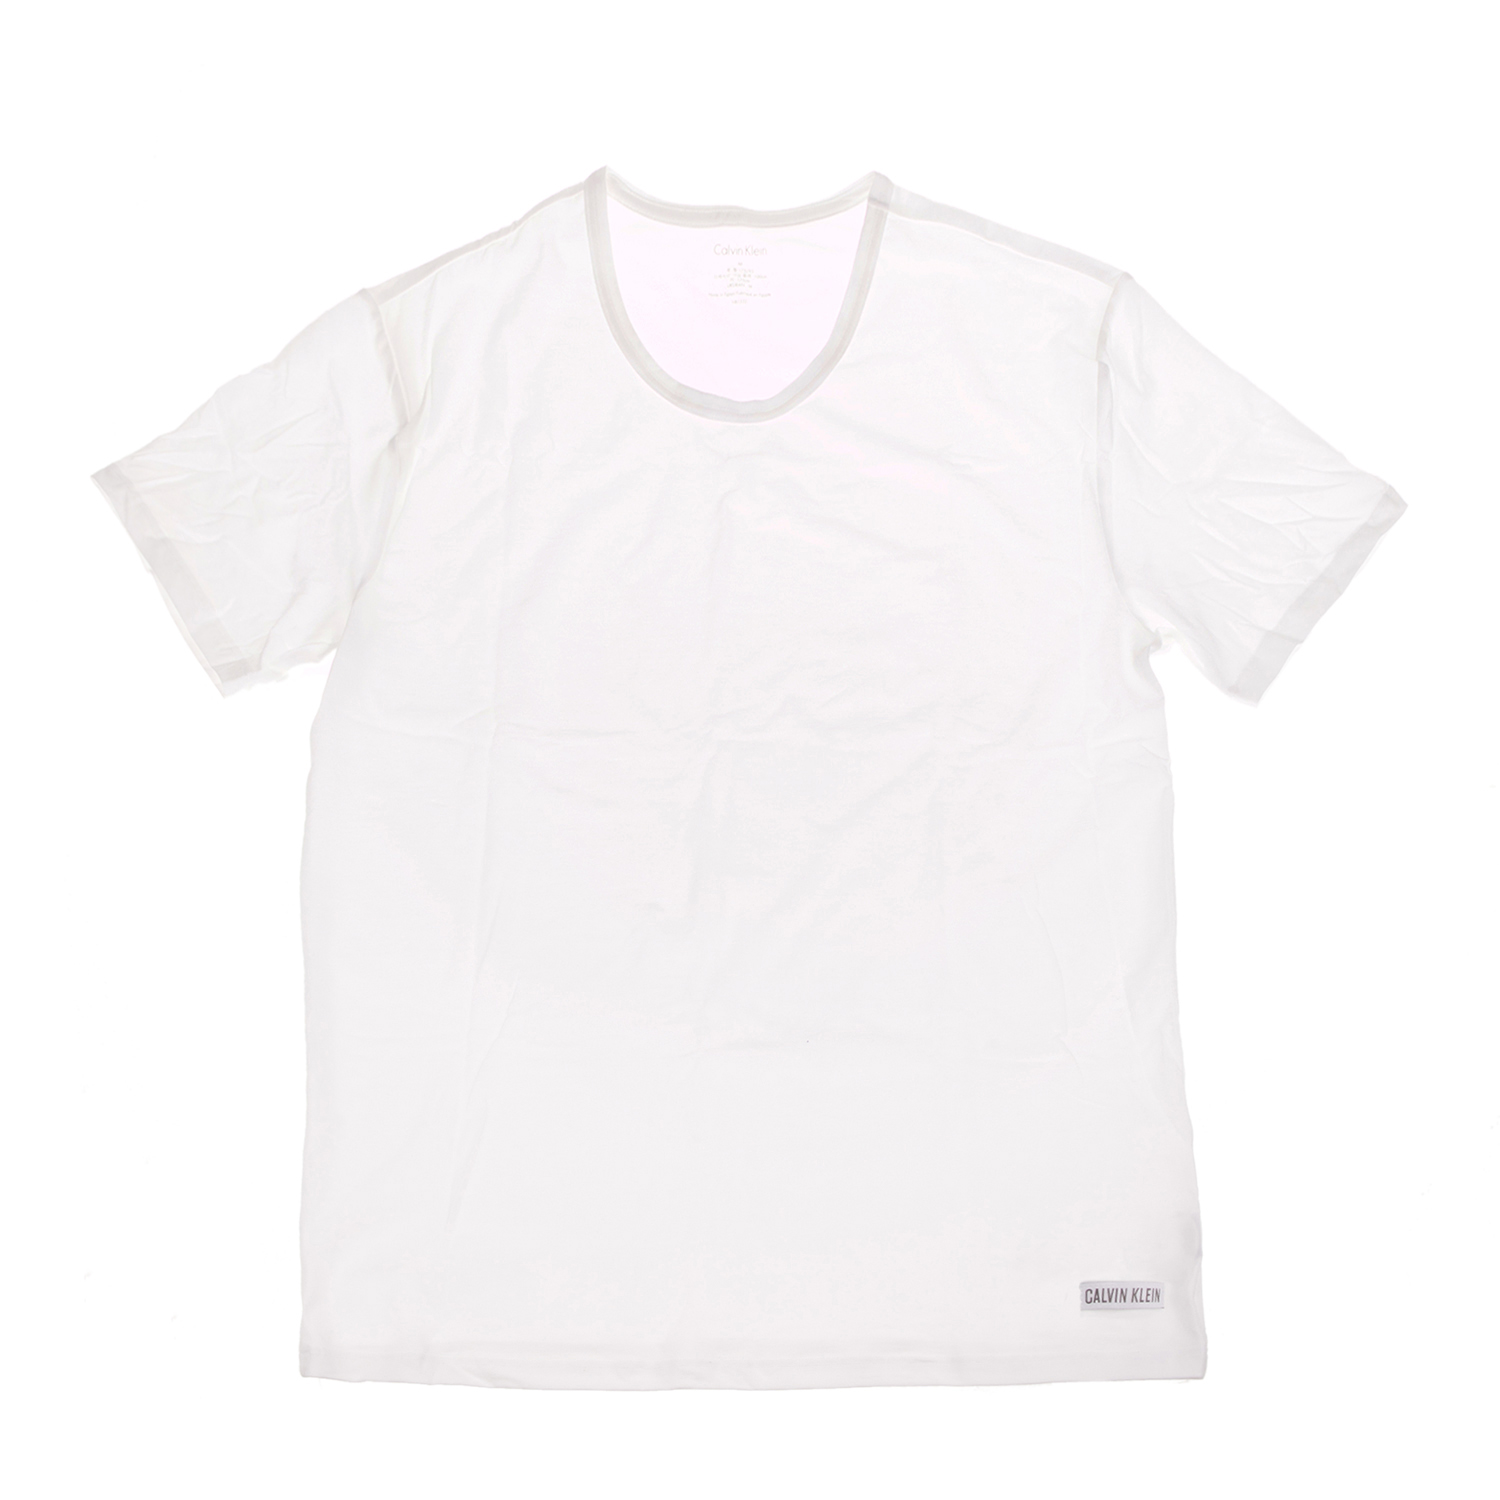 Ανδρικά/Ρούχα/Εσώρουχα/Φανέλες CK UNDERWEAR - Ανδρικό φανελάκι Calvin Klein λευκό